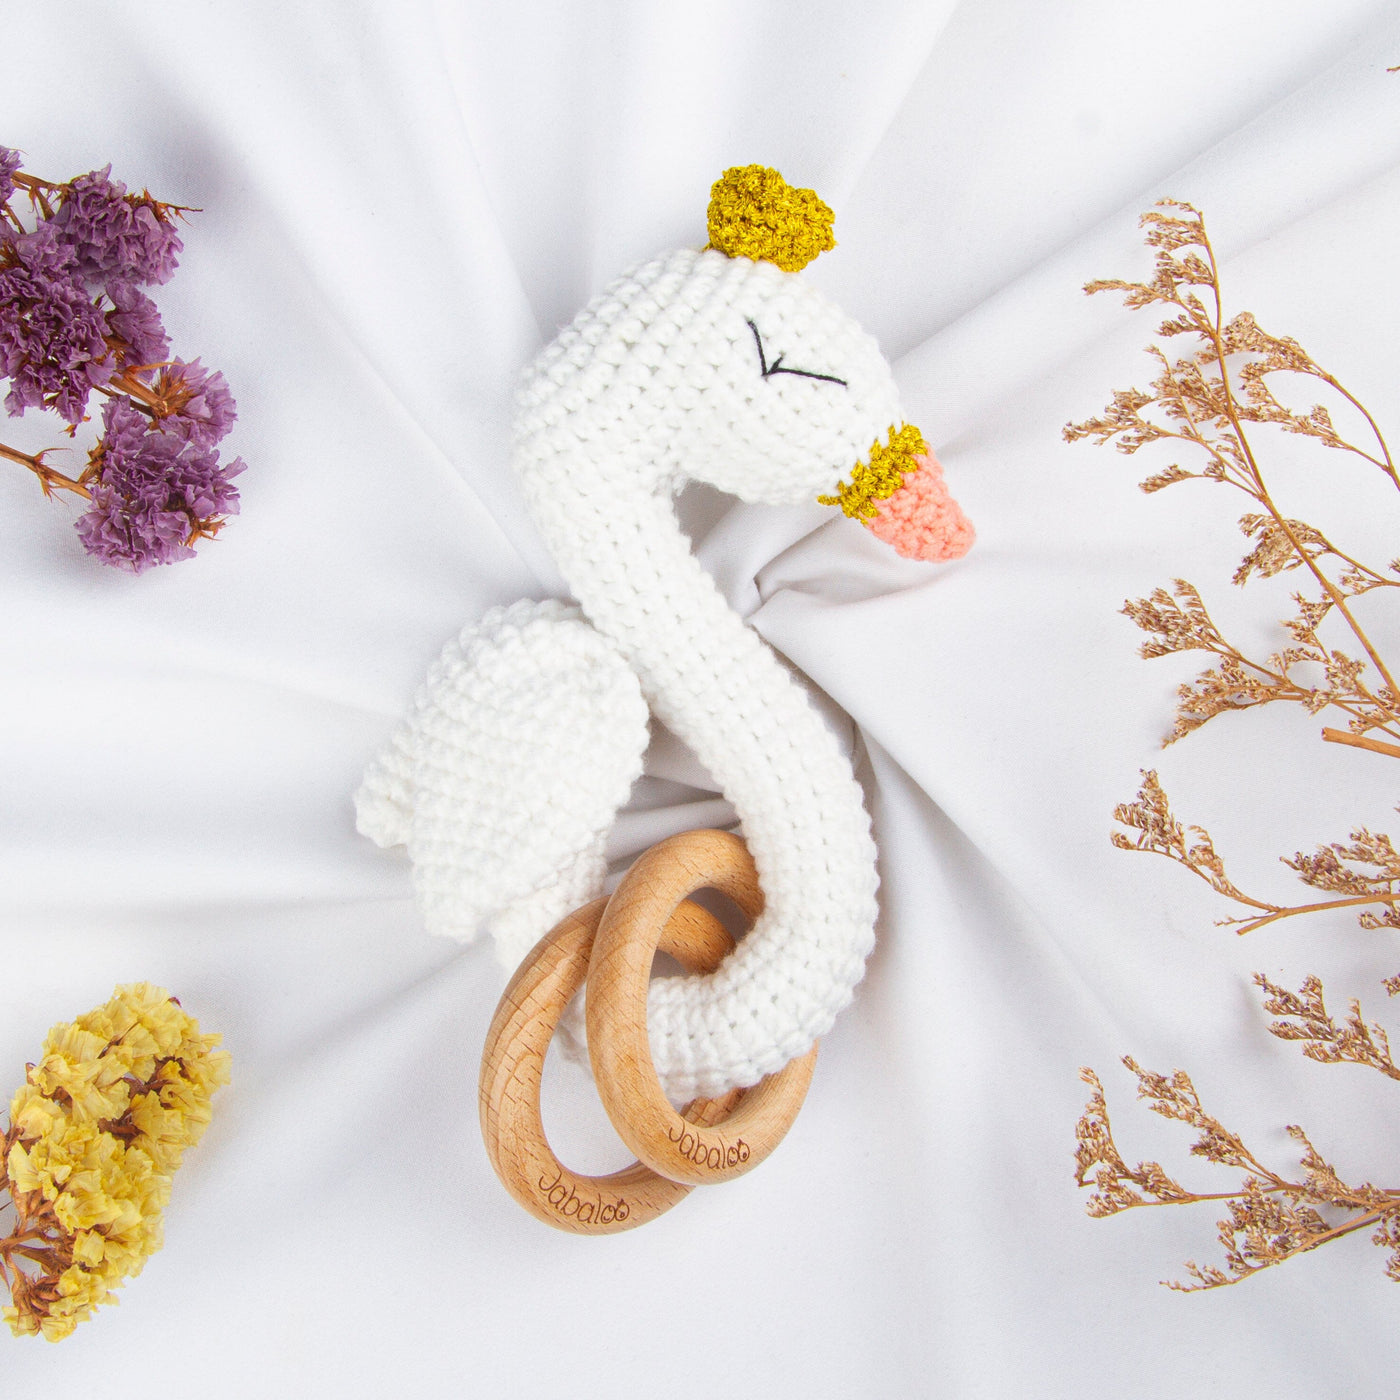 Handmade Swan Crochet Rattle toys Jabaloo 